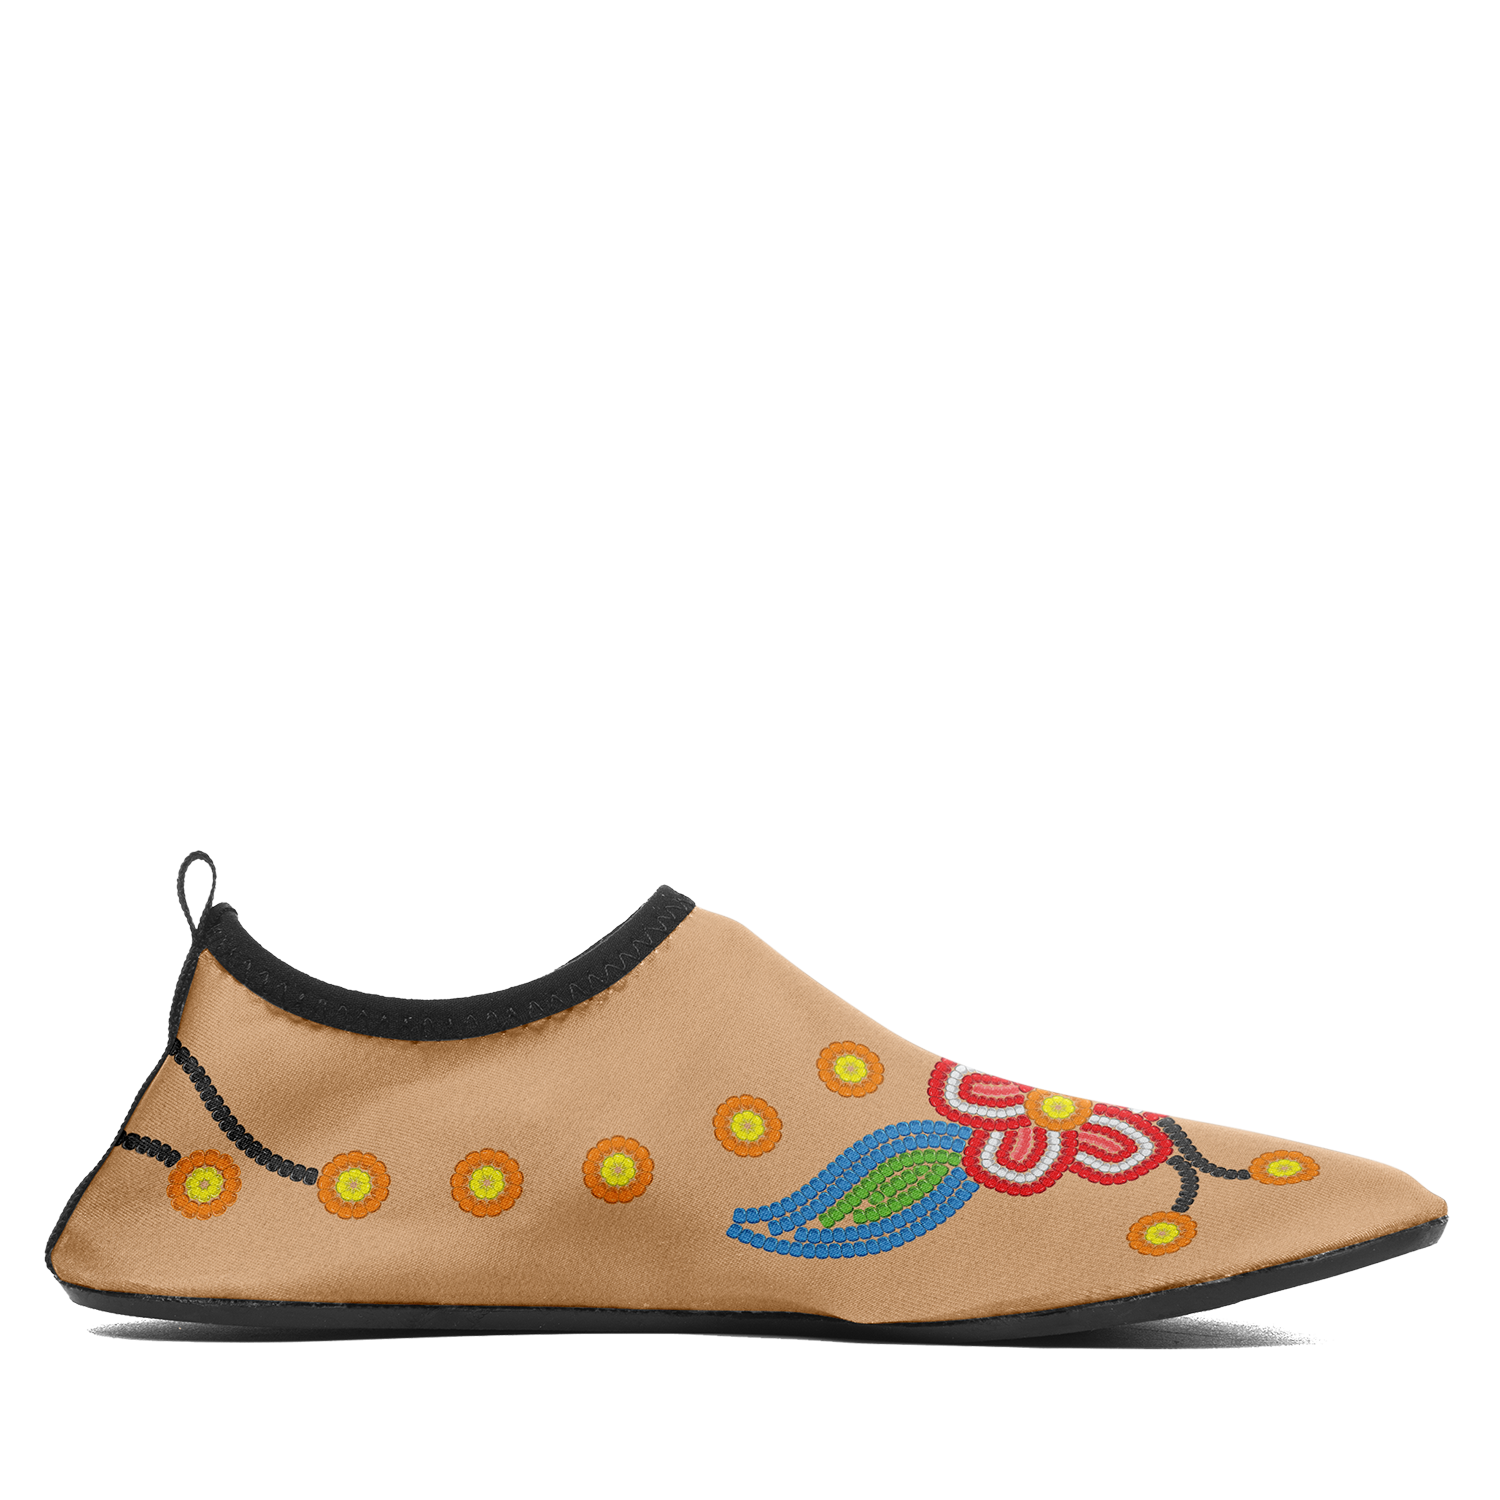 Desert Dream 2 Kid's Sockamoccs Slip On Shoes